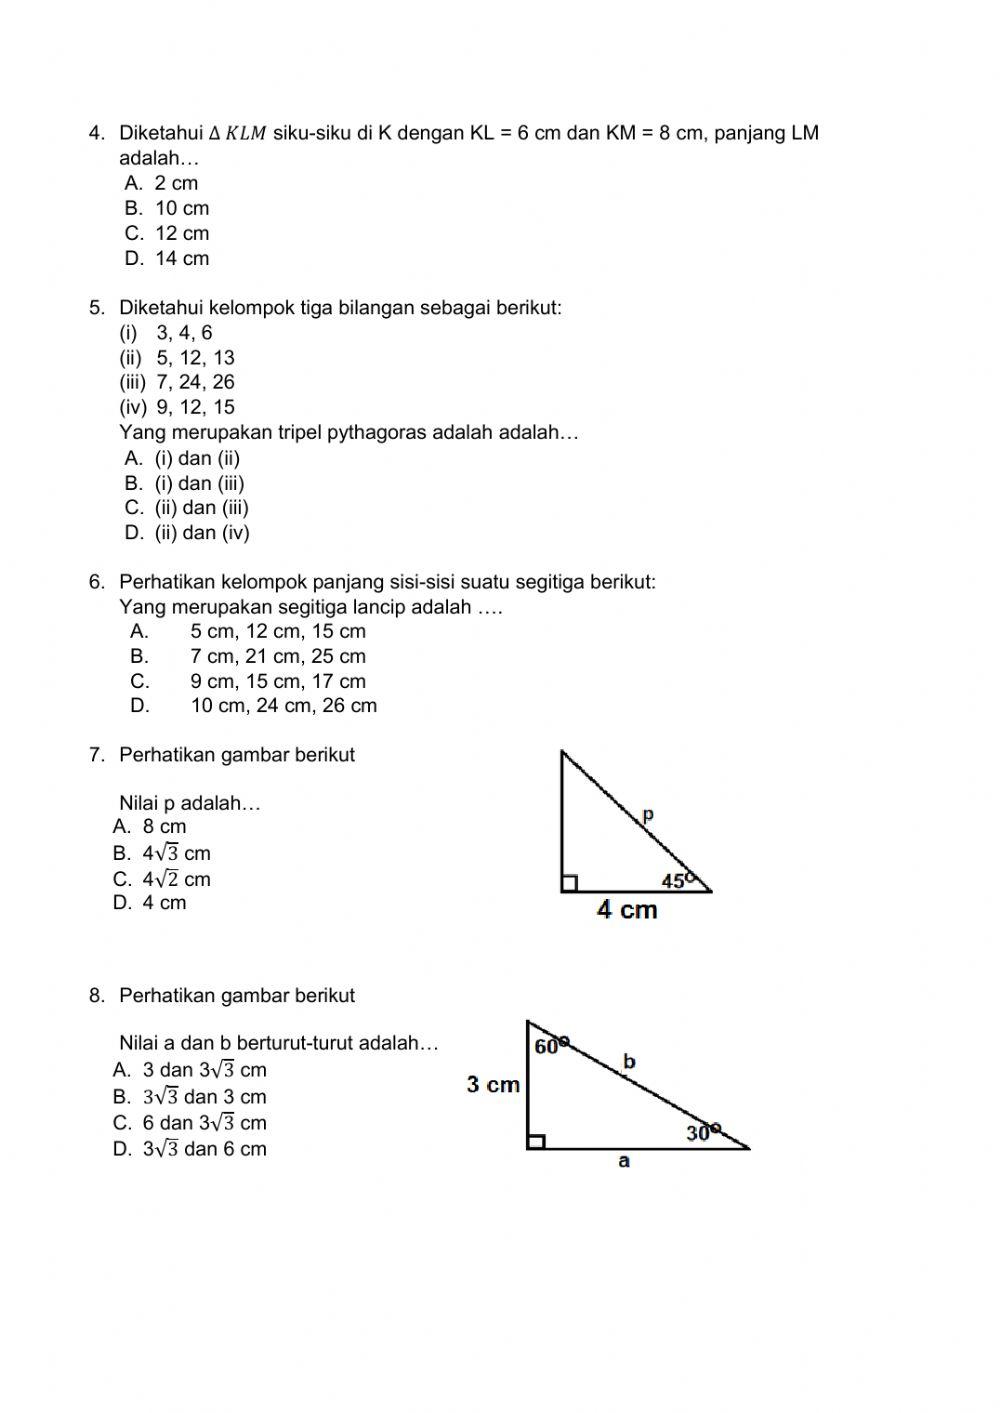 Teorema Pythagoras kelas 8